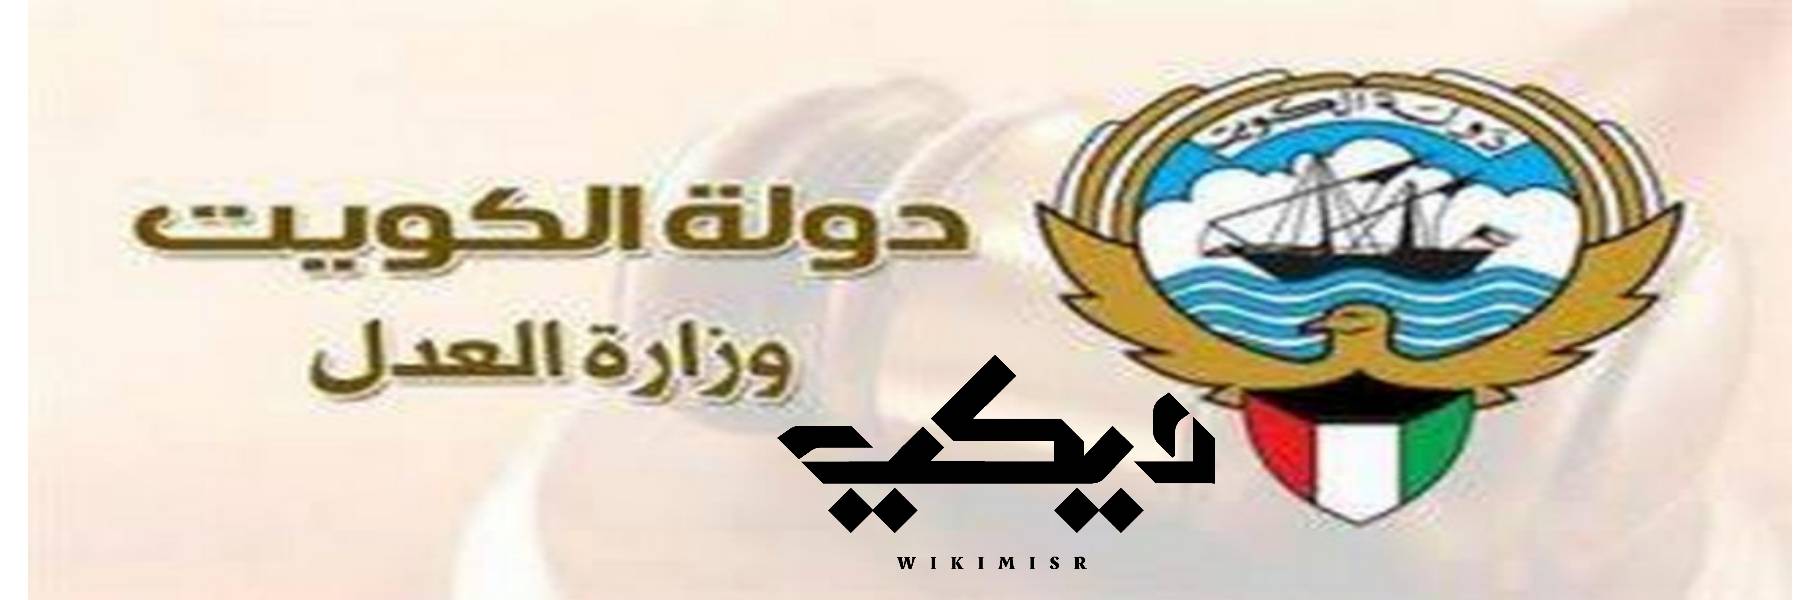 بوابة العدل الالكترونية بالرقم المدني أو الرقم الآلي الكويت